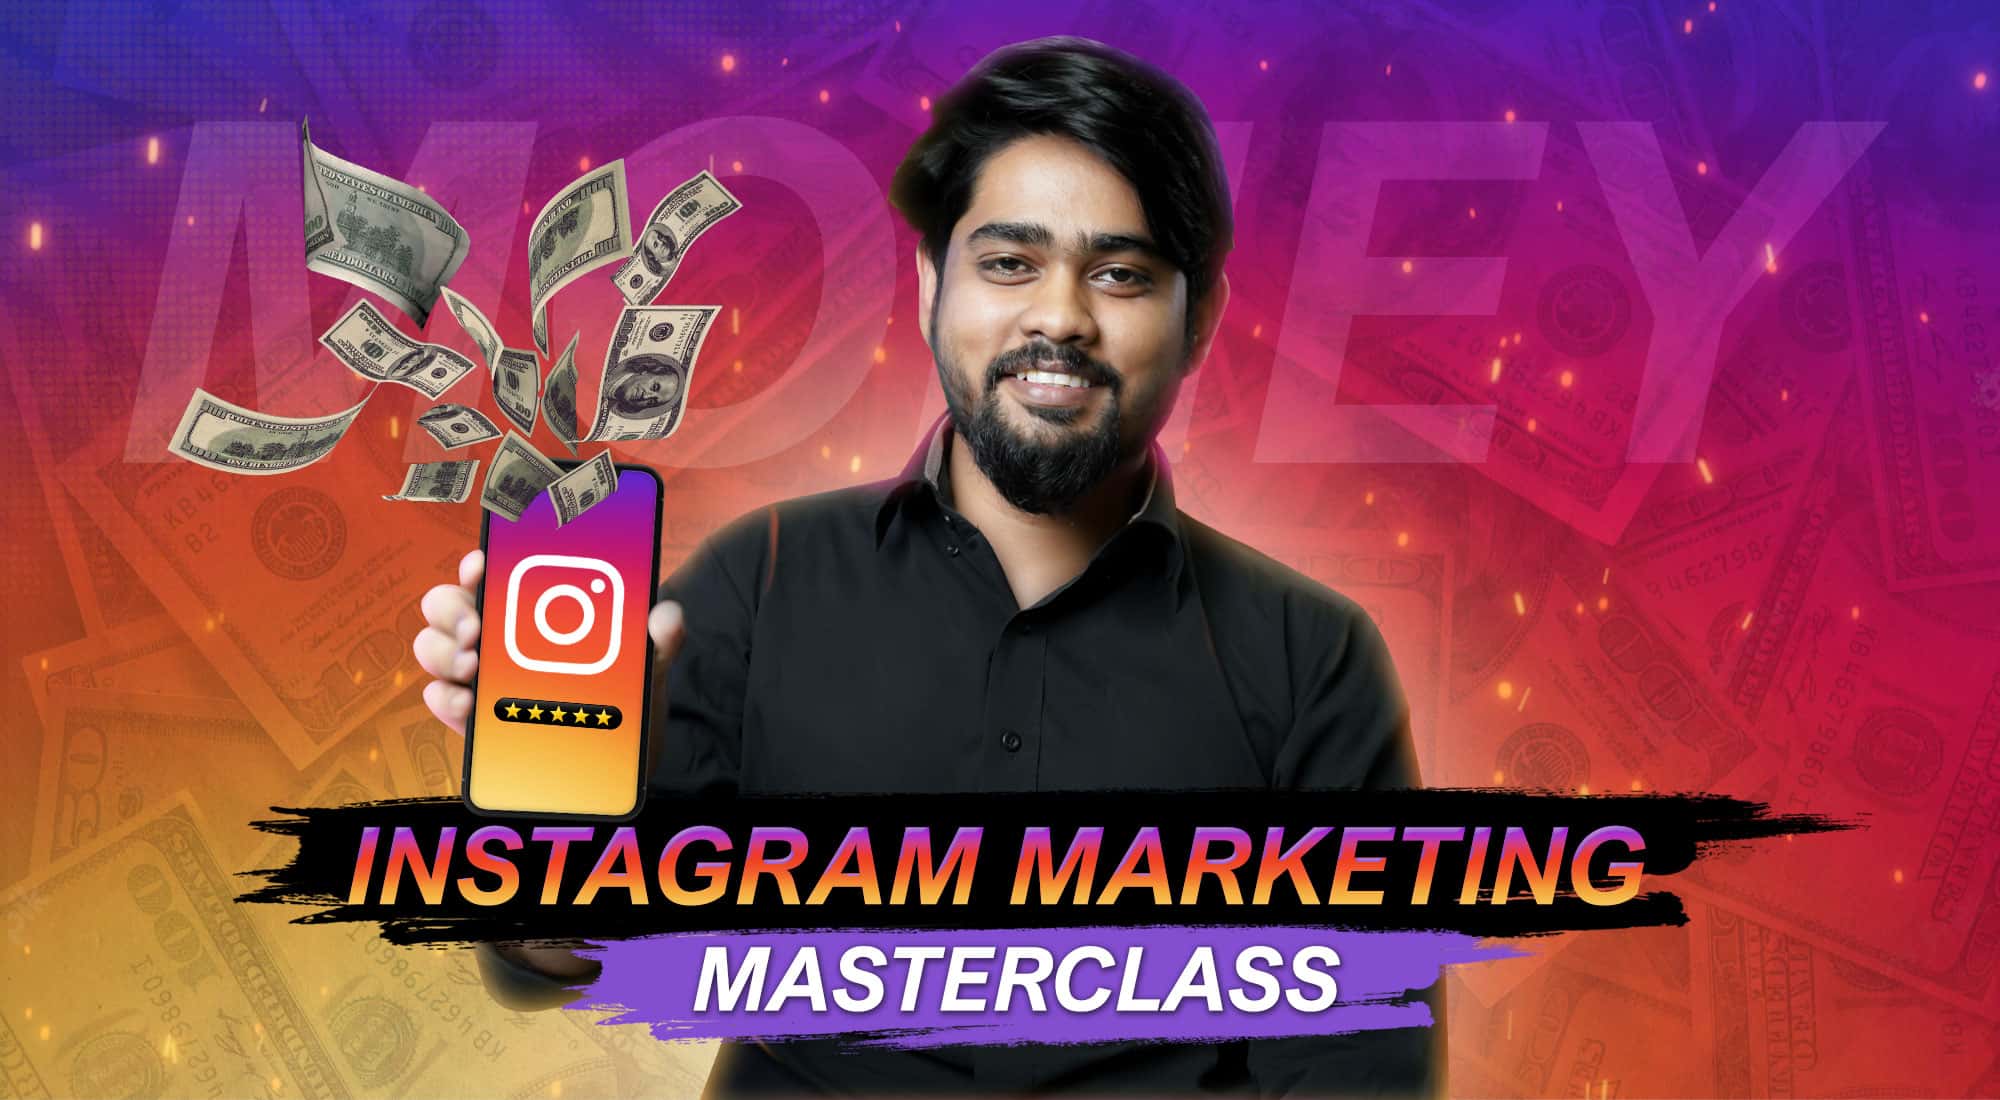 Instagram Marketing Masterclass By MSBAcademy